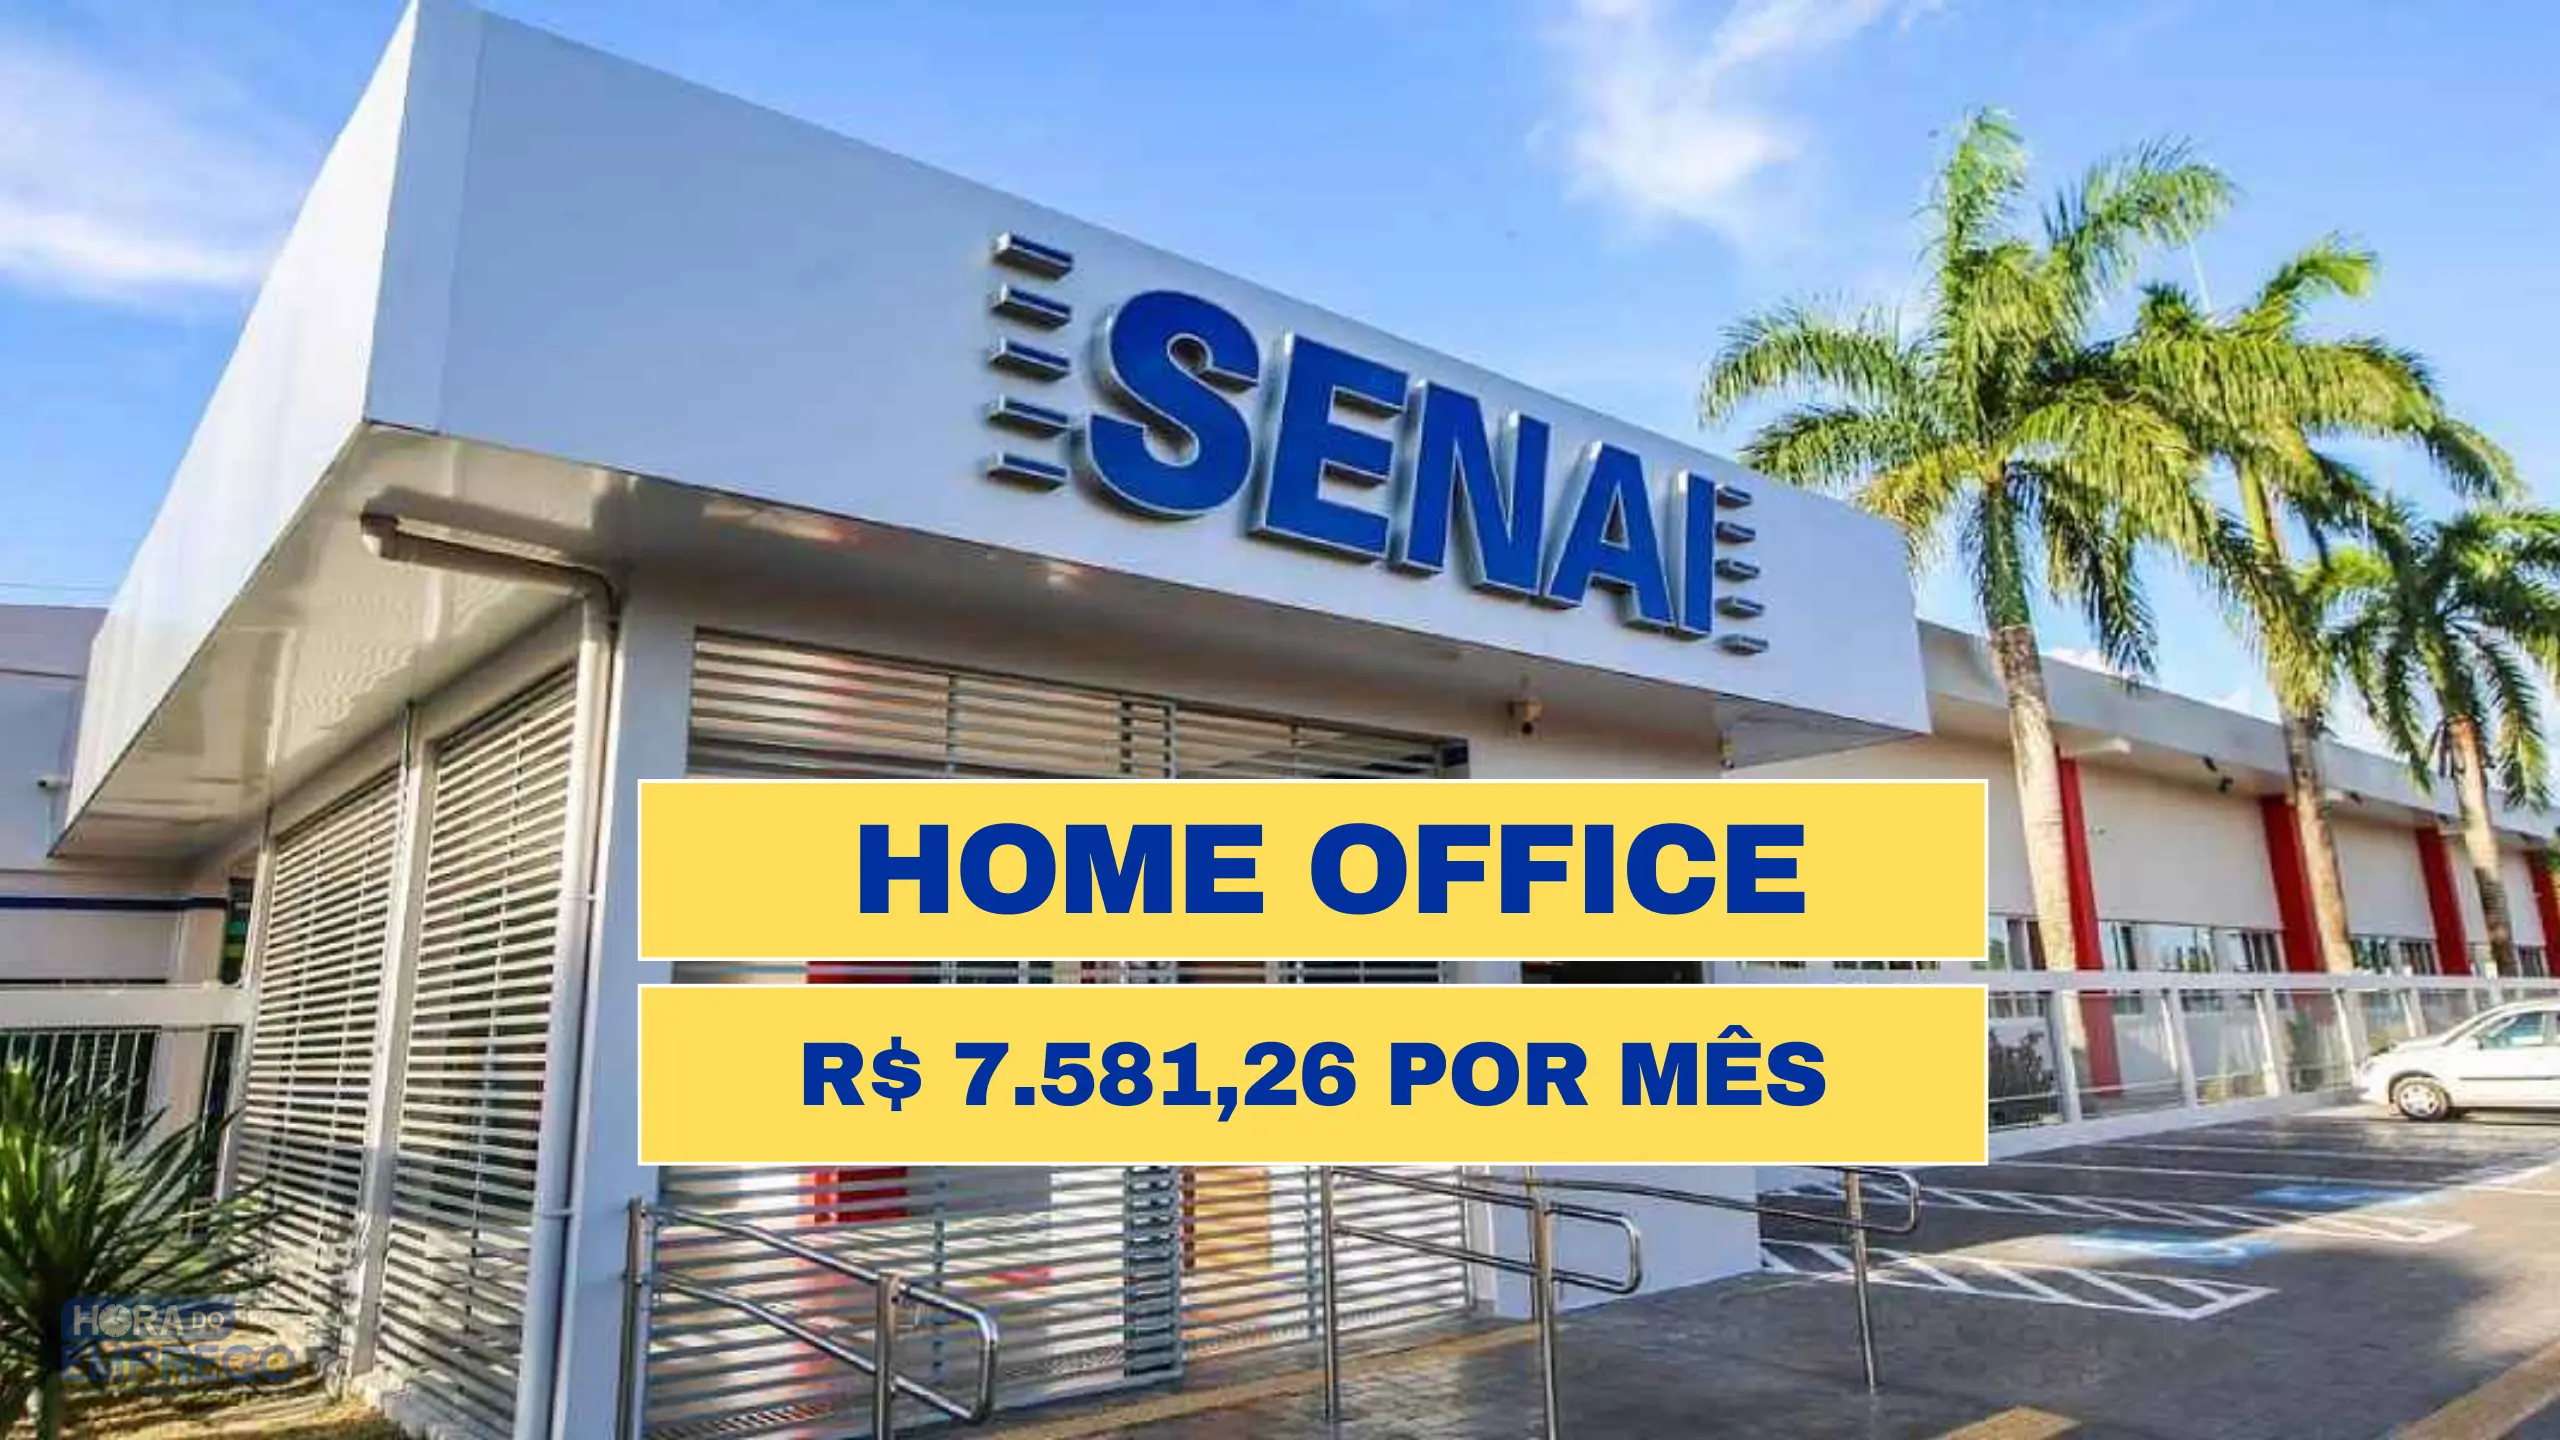 Senai abre vagas HOME OFFICE com salário de R$ 7.581,26 no setor de Pesquisa e Otimização